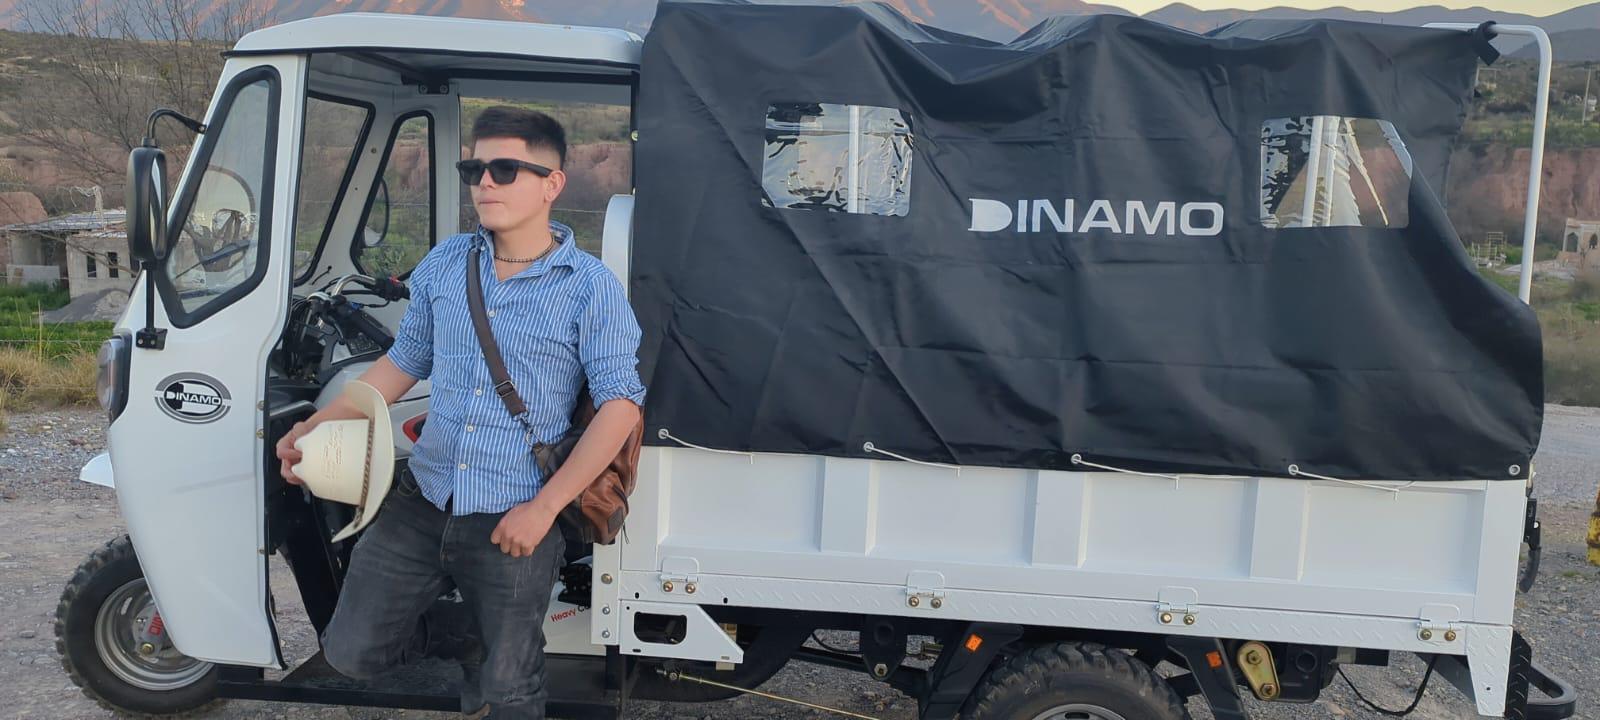 $!Daniel posa junto a su motocicleta Dinamo adaptada para transportar mascotas, una iniciativa que ha capturado la atención en redes sociales.